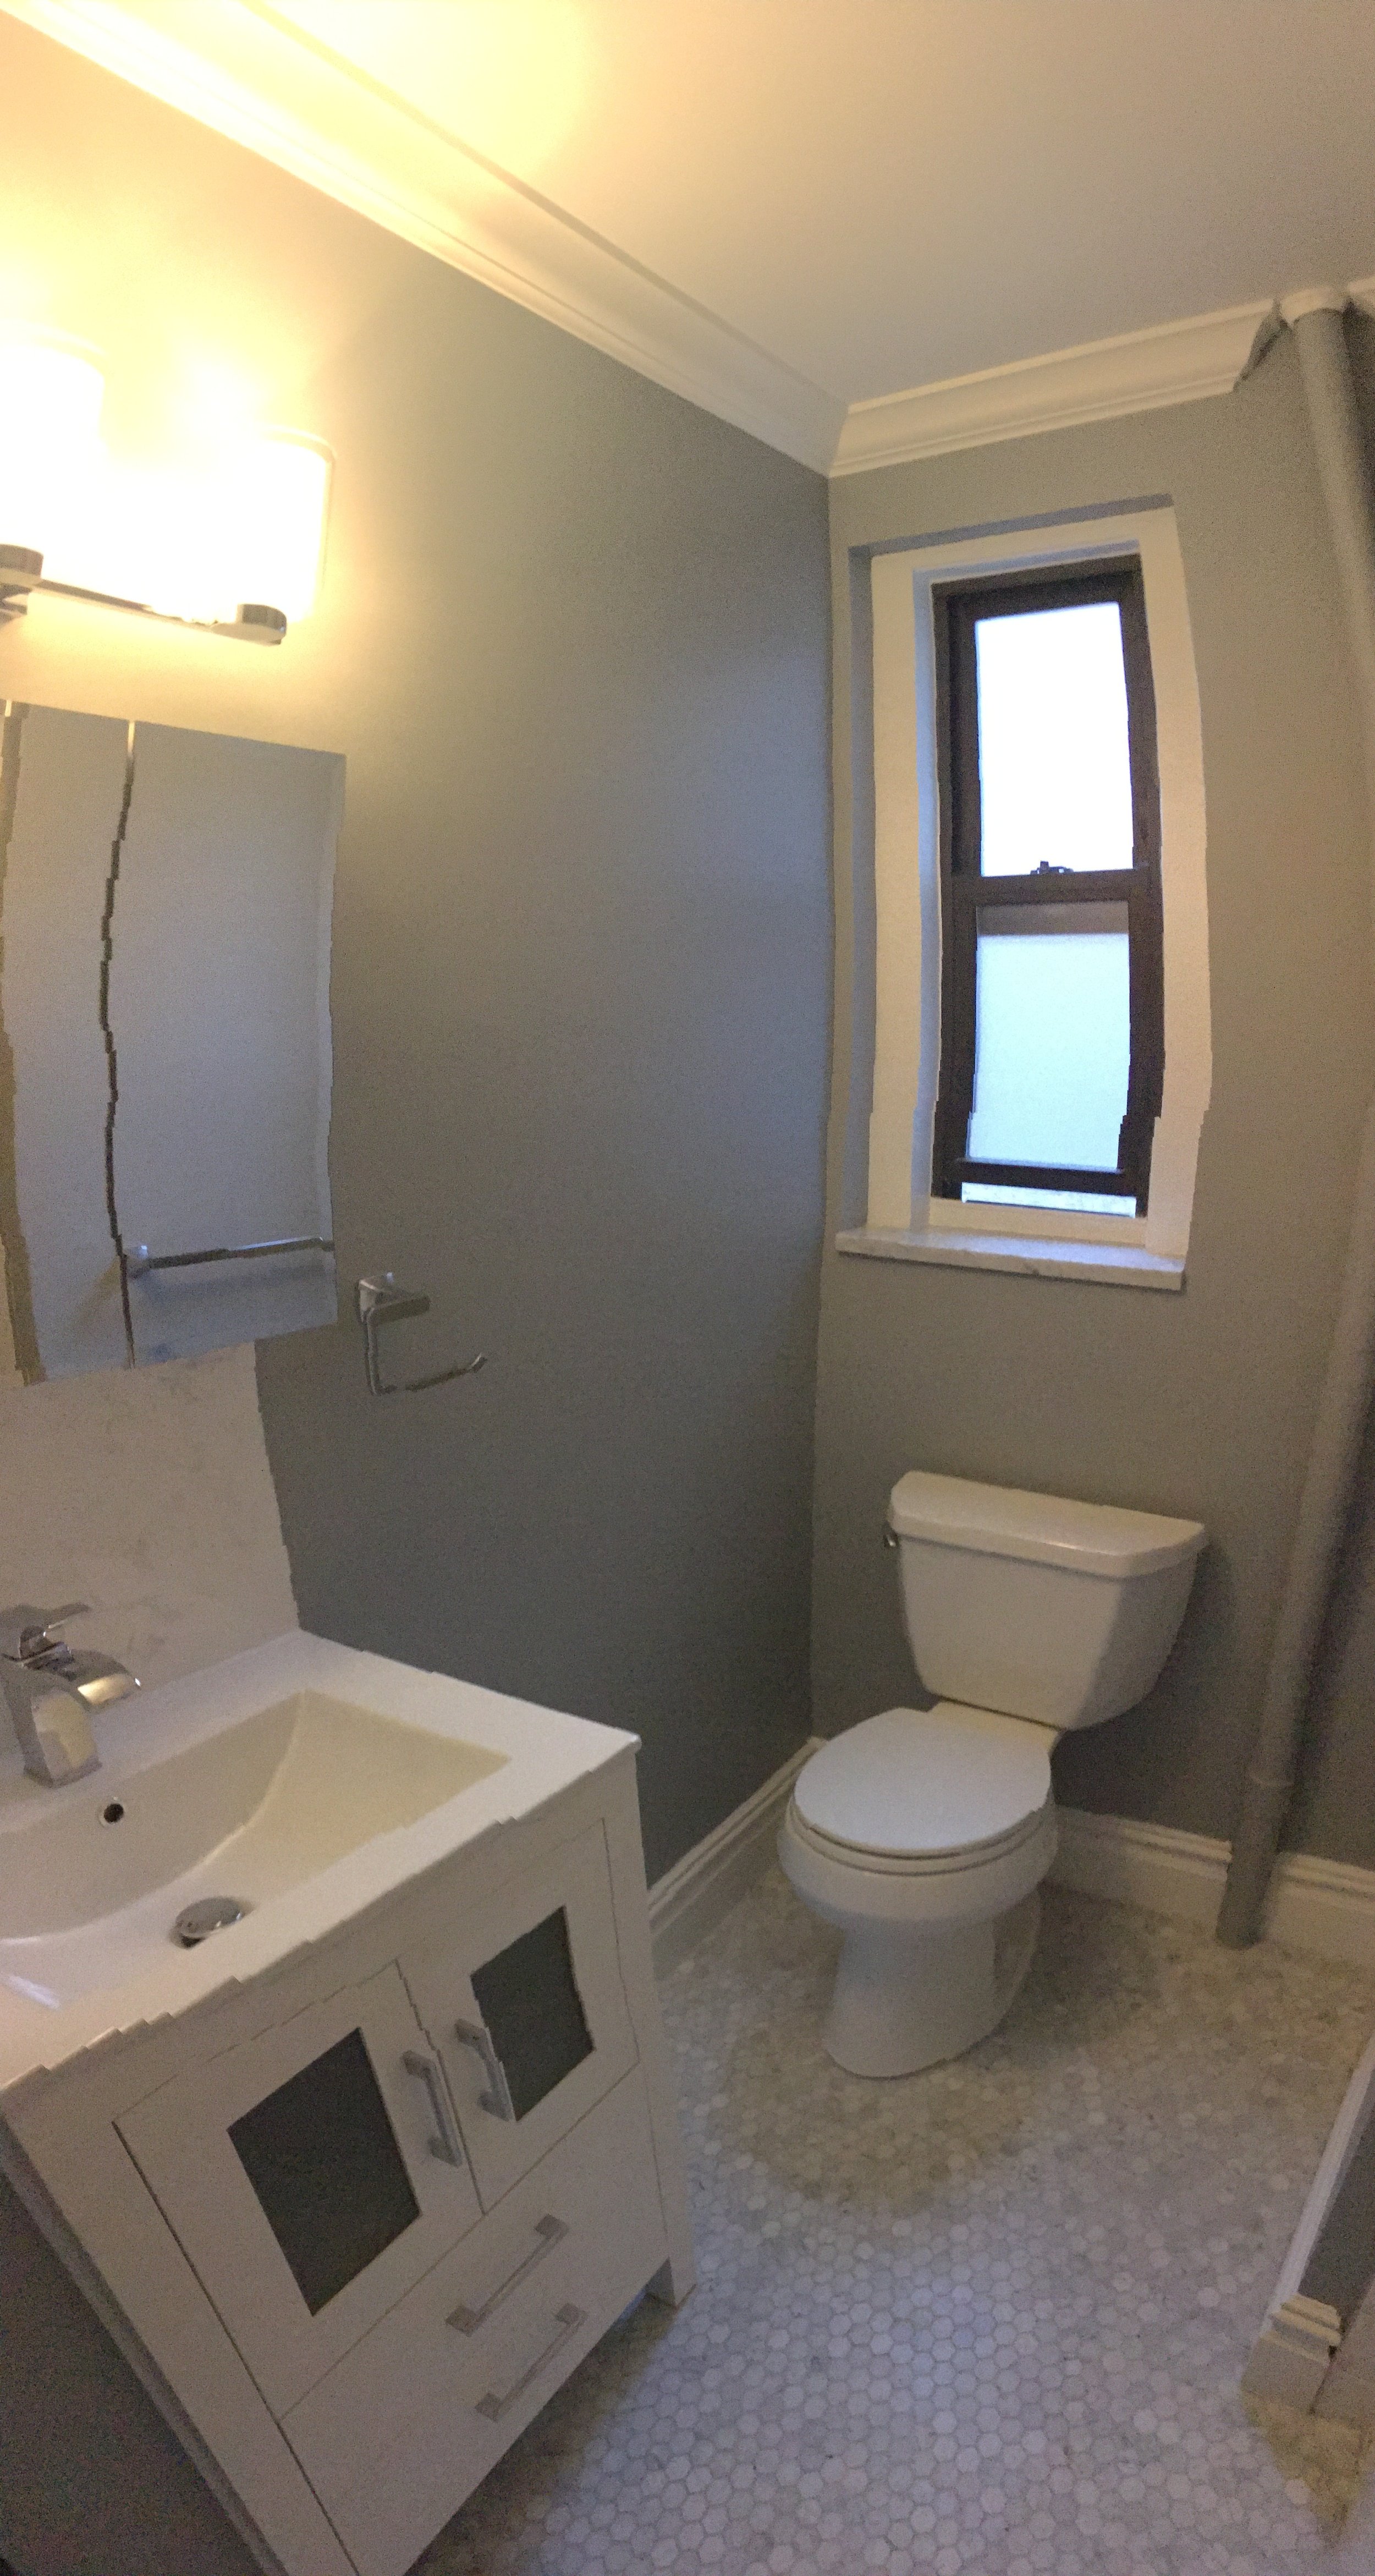 BUILDINWOOD Inwood Bathroom Remodel:  Licensed&Fully Insured Contractor